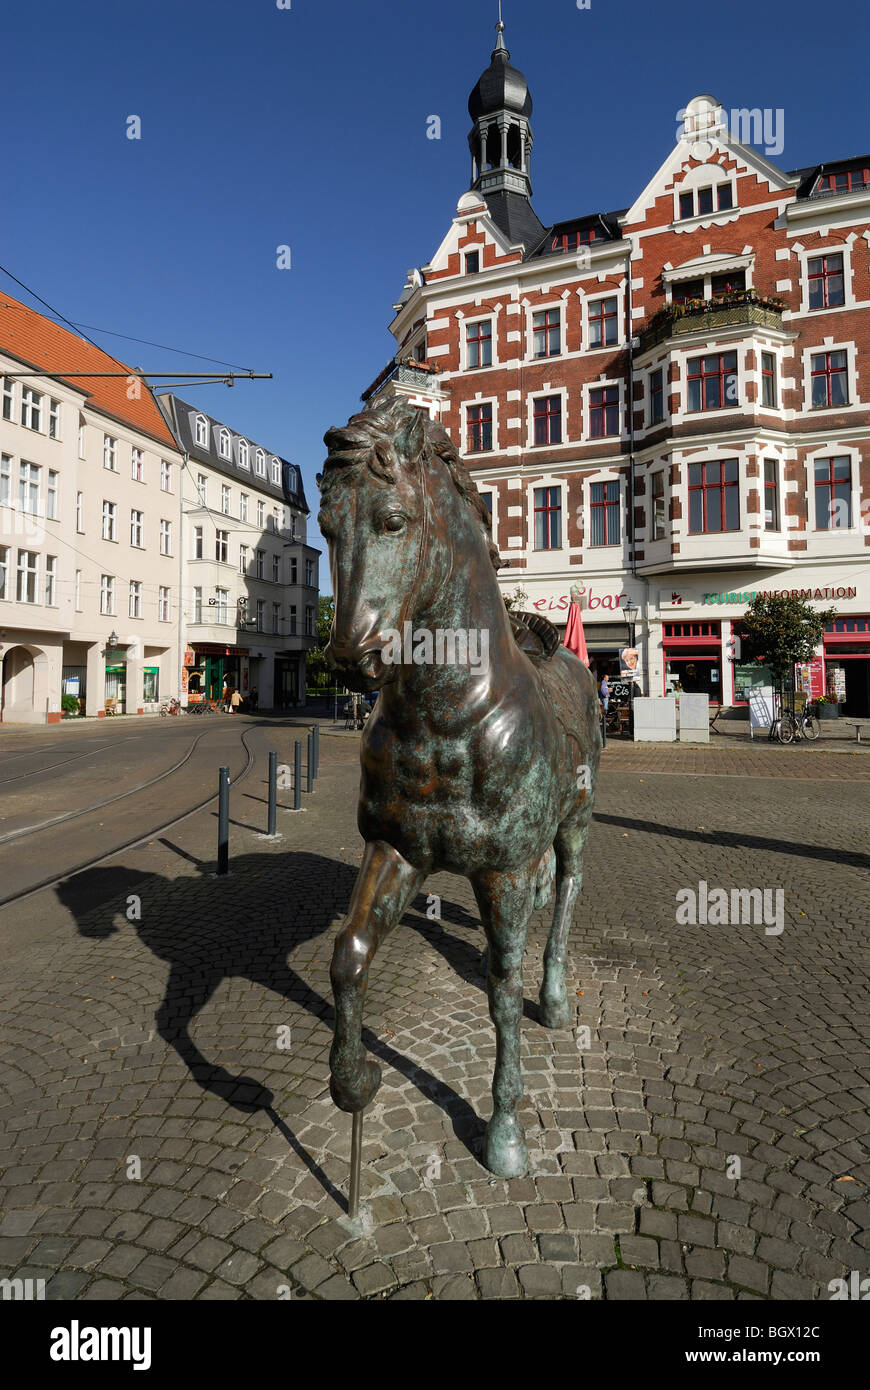 Berlino. Germania. Scultura equestre "cavallo" sulla Schlossplatz, Kopenick da Alessandro La Rocca 2007. Foto Stock